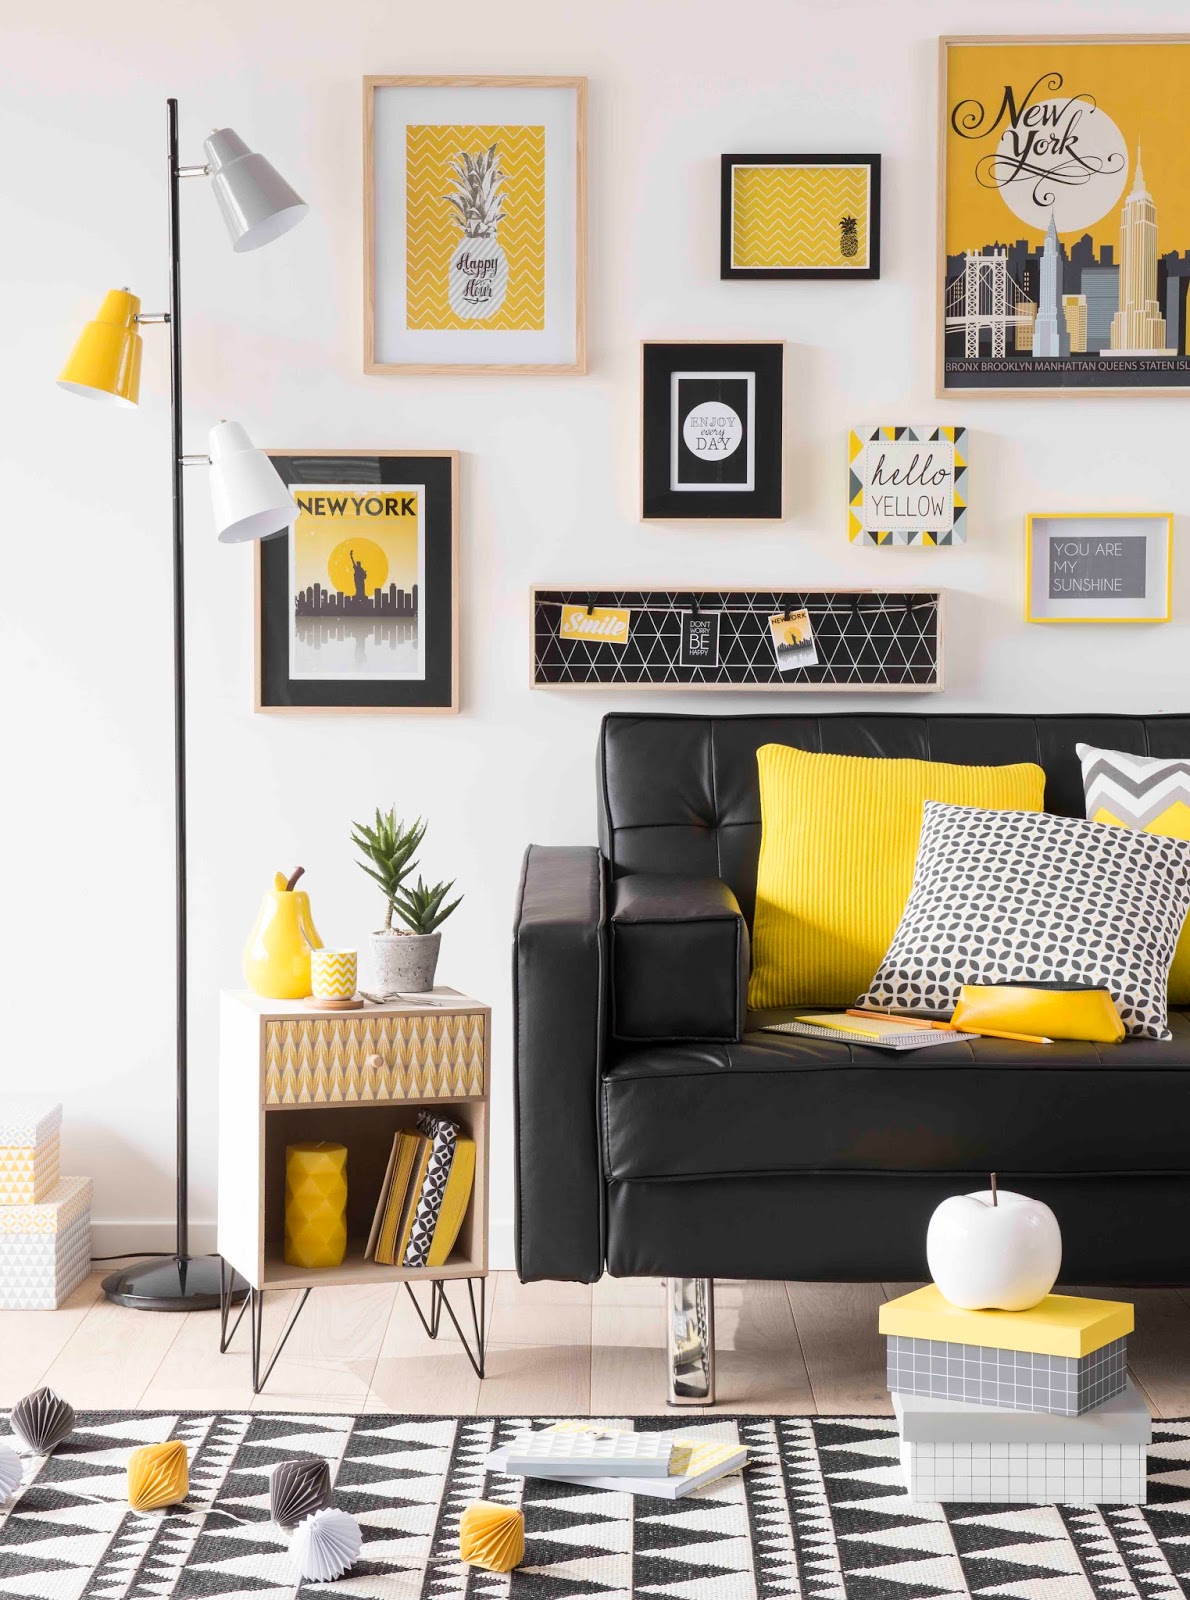 Phòng khách tuy hạn chế bảng màu là vàng và đen trên phông nền trắng nhưng vẫn vô cùng nổi bật nhờ sofa bọc da mềm mại cùng các chi tiết nhấn nhá màu vàng rực.